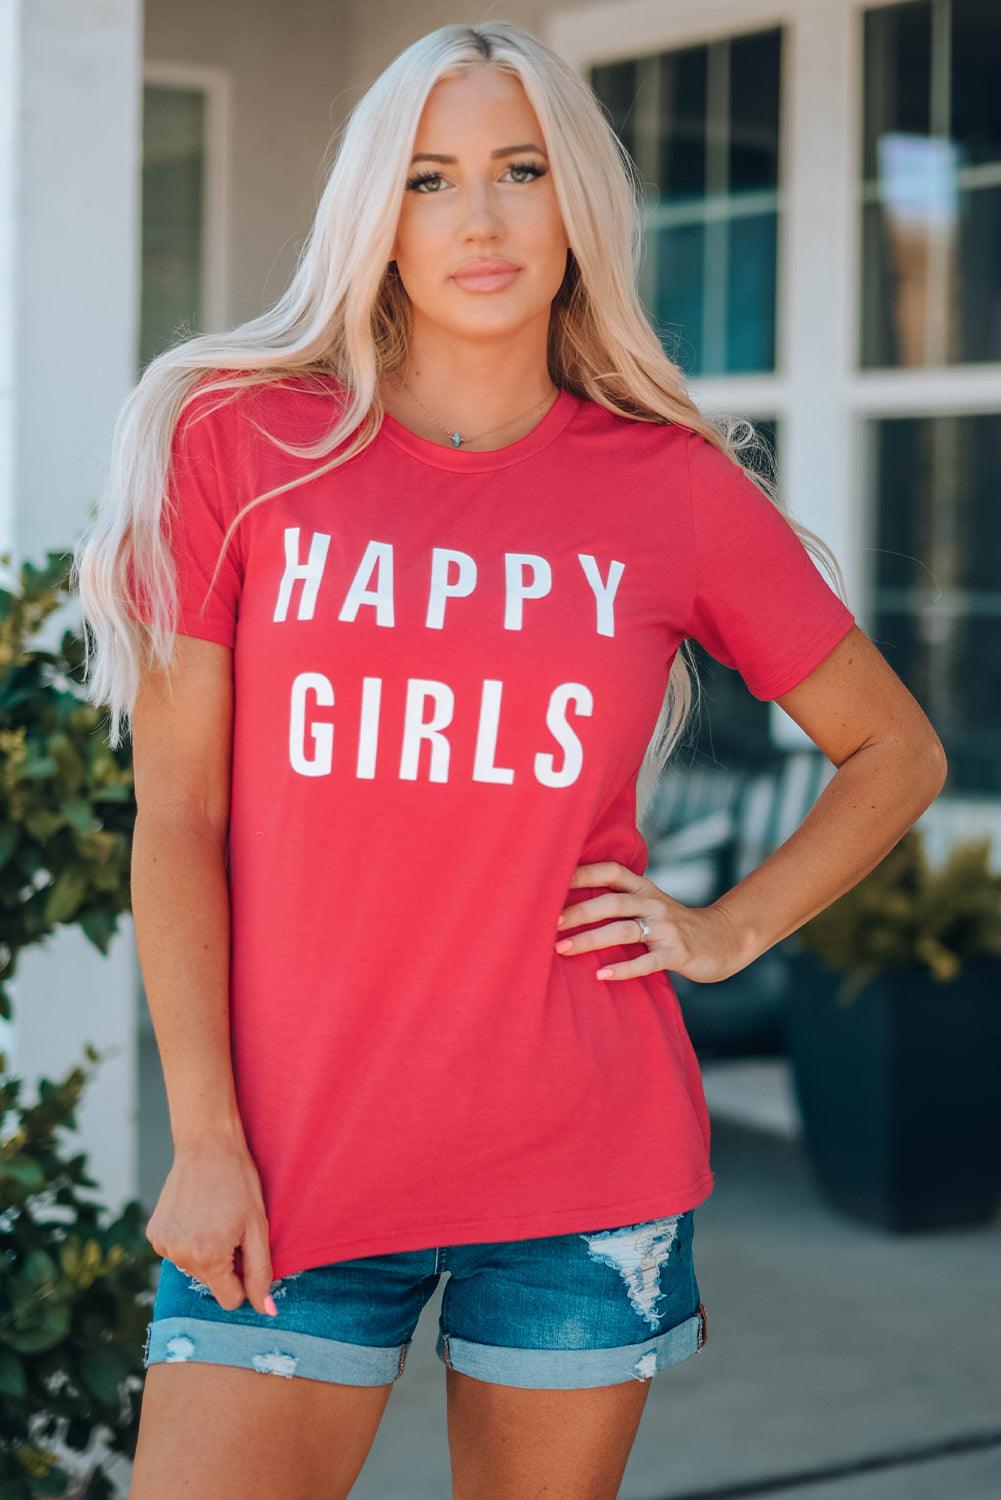 HAPPY GIRLS Short Sleeve Tee Shirt - Trendha